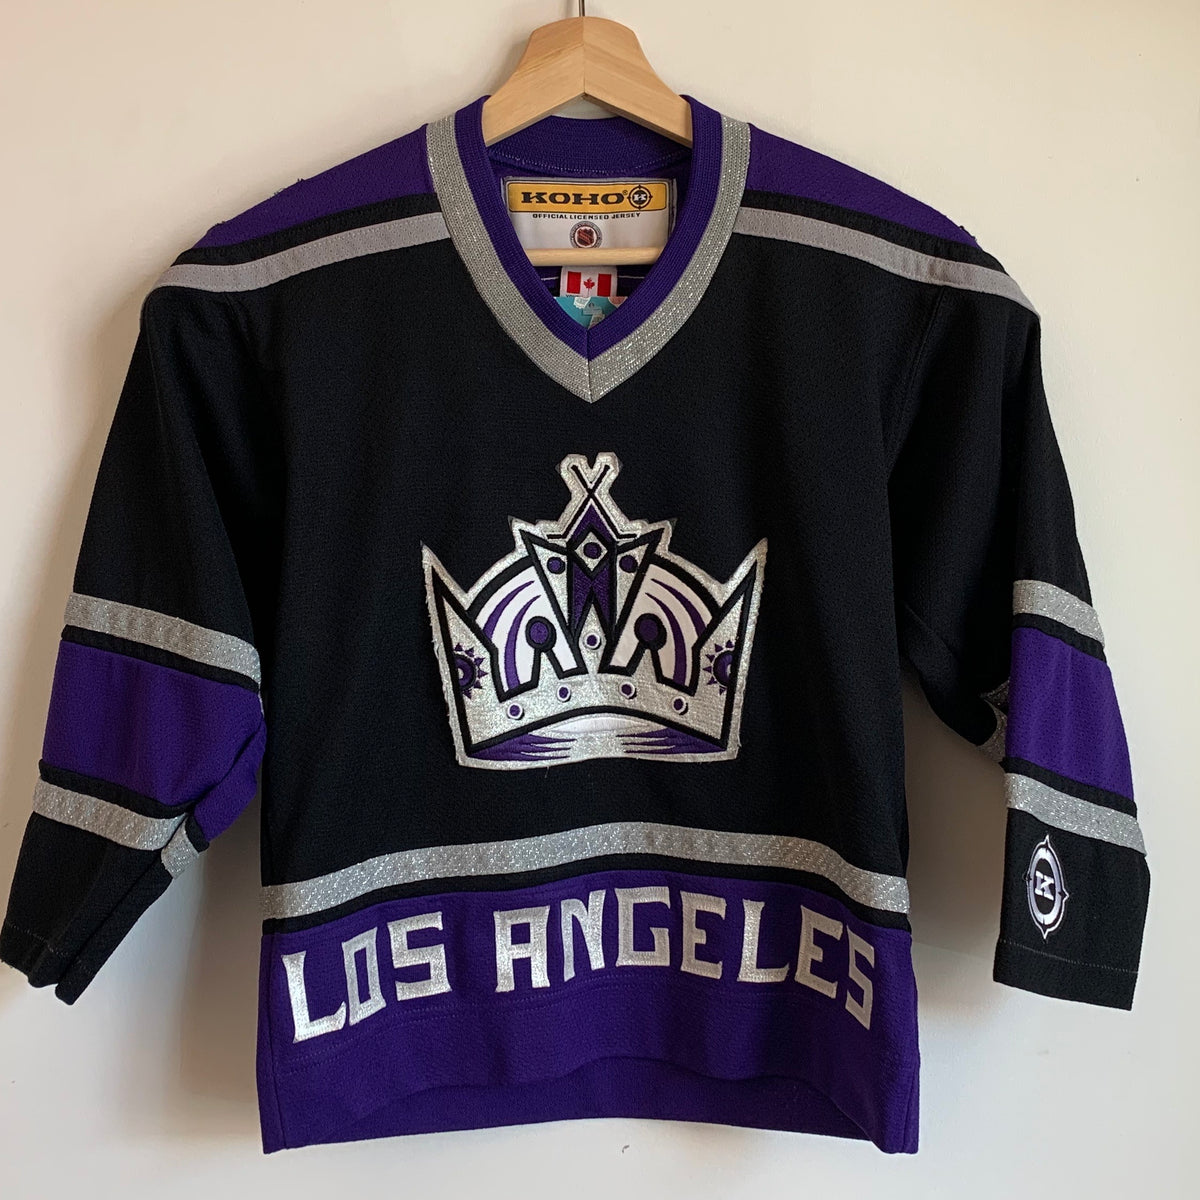 Los Angeles Kings Women's Apparel